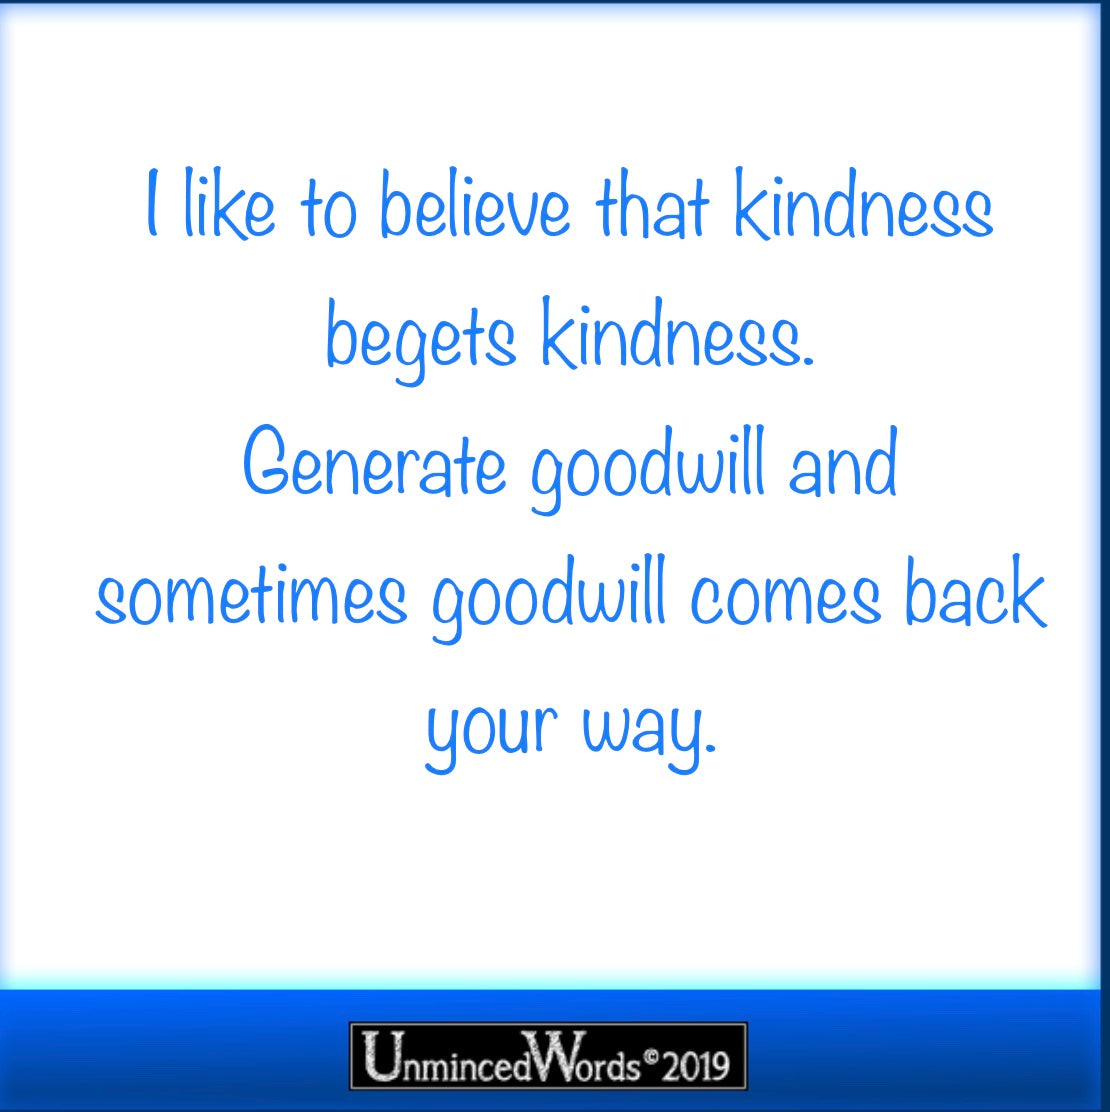 Kindness Begets Kindness.